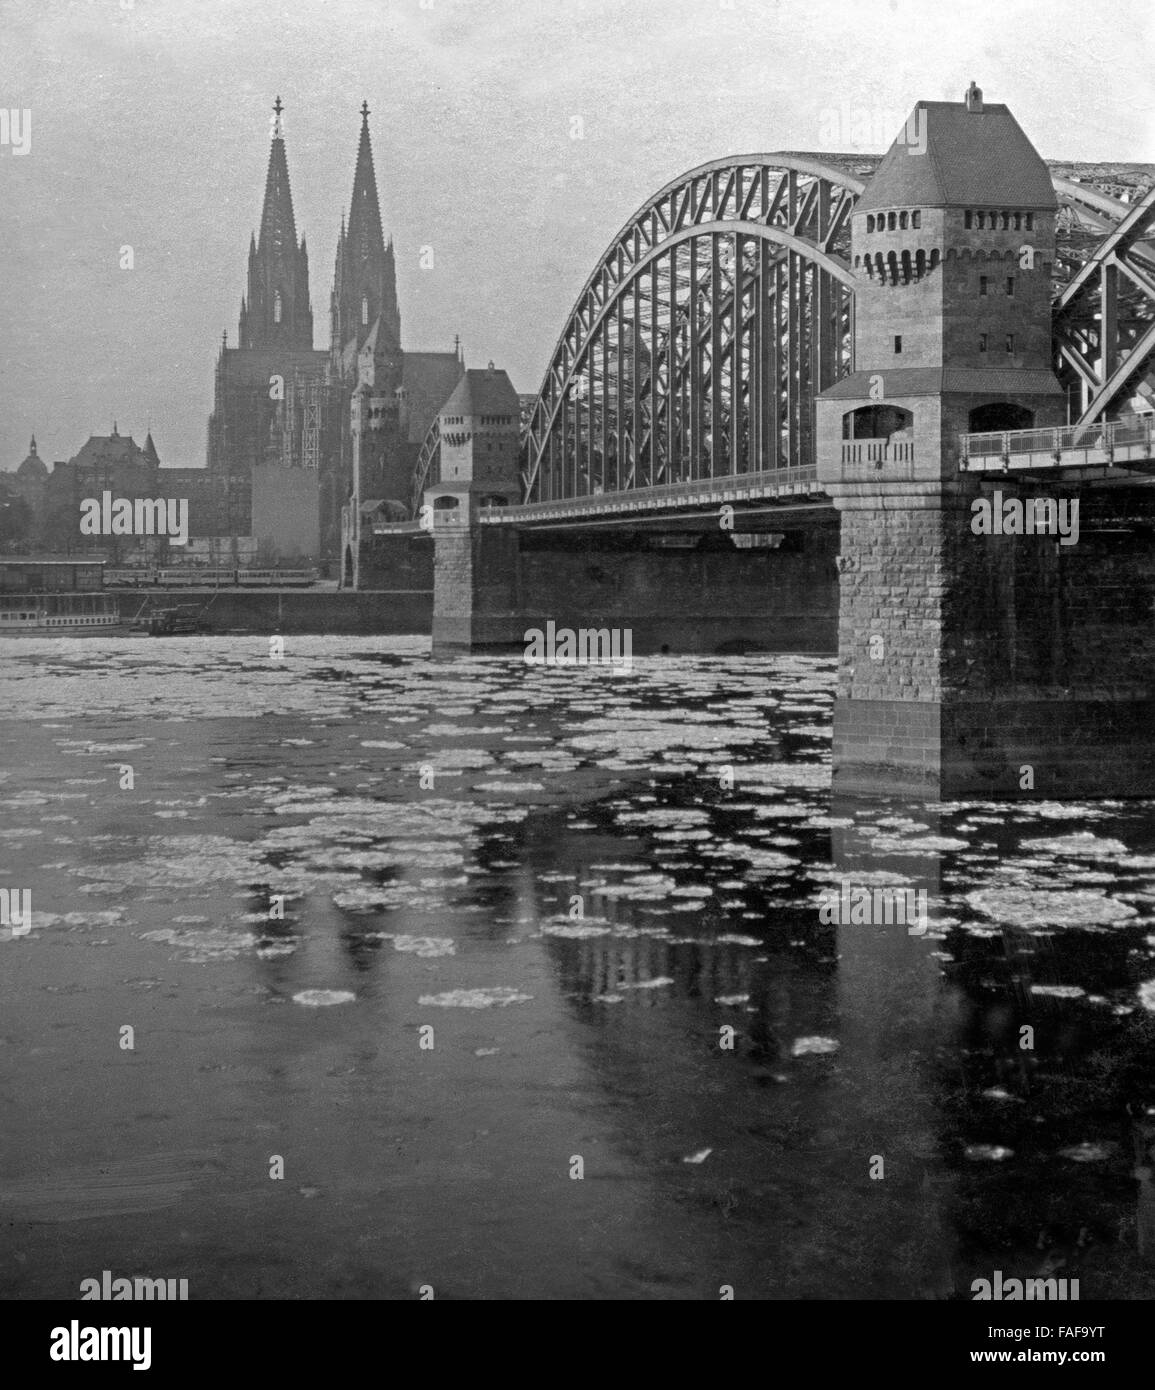 Eisschollen Treiben Über Den Rhein eine der Altstadt von Köln Vorbei Deutschland 1920er Jahre. Eis-Schollen, vorbei an der Stadt Köln am Fluss Rhein, Deutschland der 1920er Jahre. Stockfoto